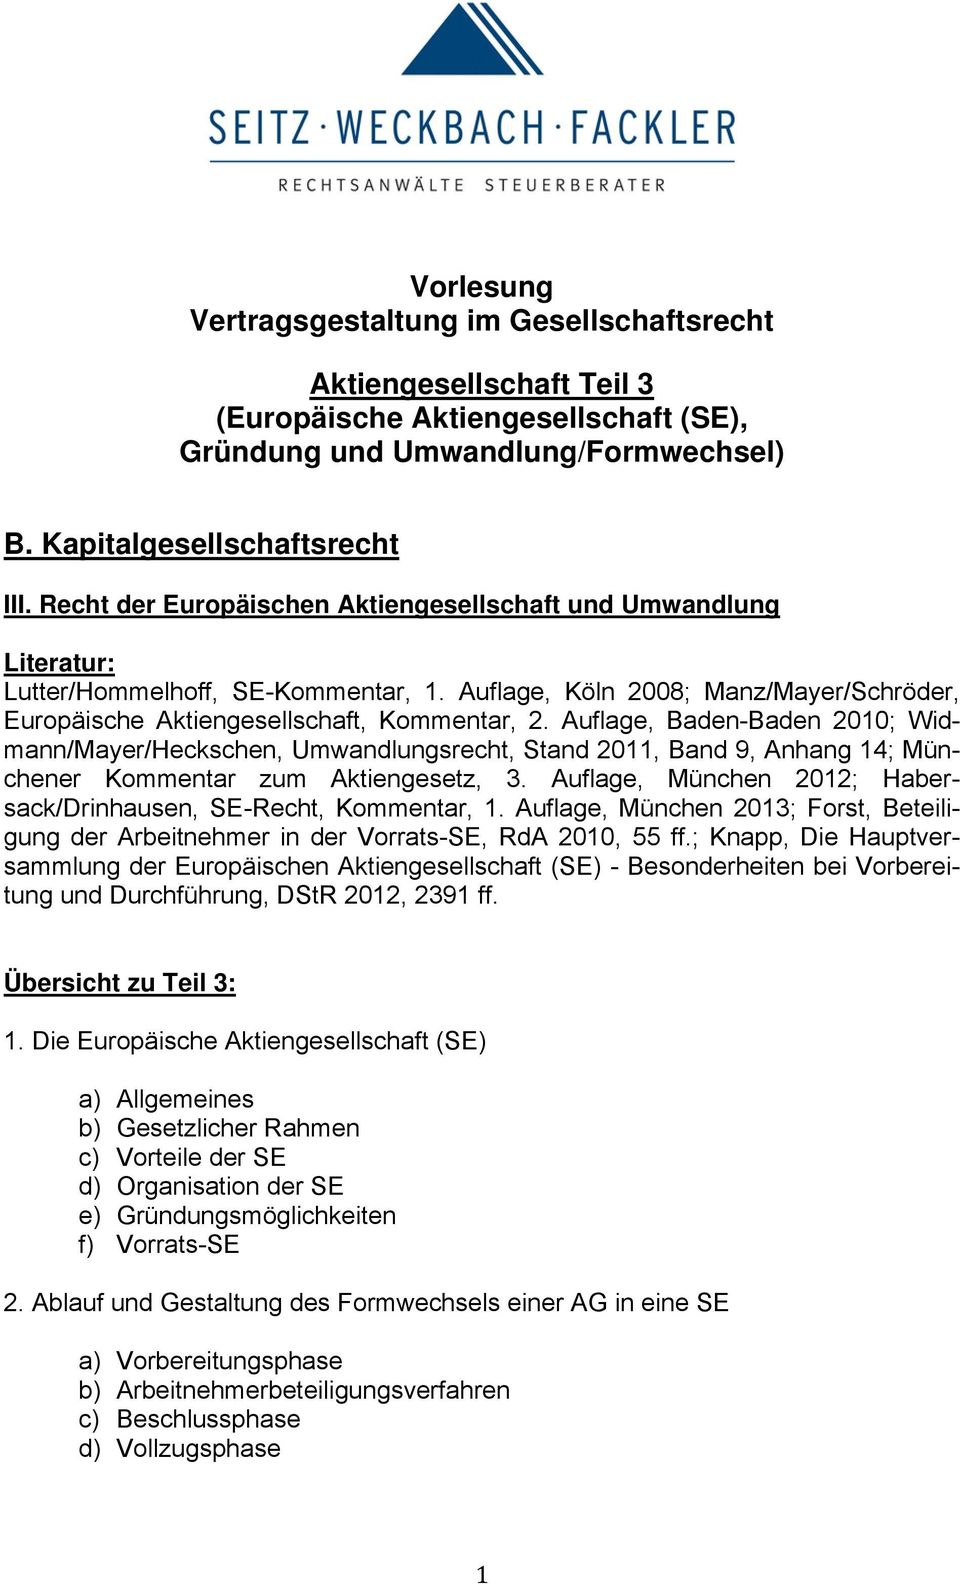 Auflage, Baden-Baden 2010; Widmann/Mayer/Heckschen, Umwandlungsrecht, Stand 2011, Band 9, Anhang 14; Münchener Kommentar zum Aktiengesetz, 3.